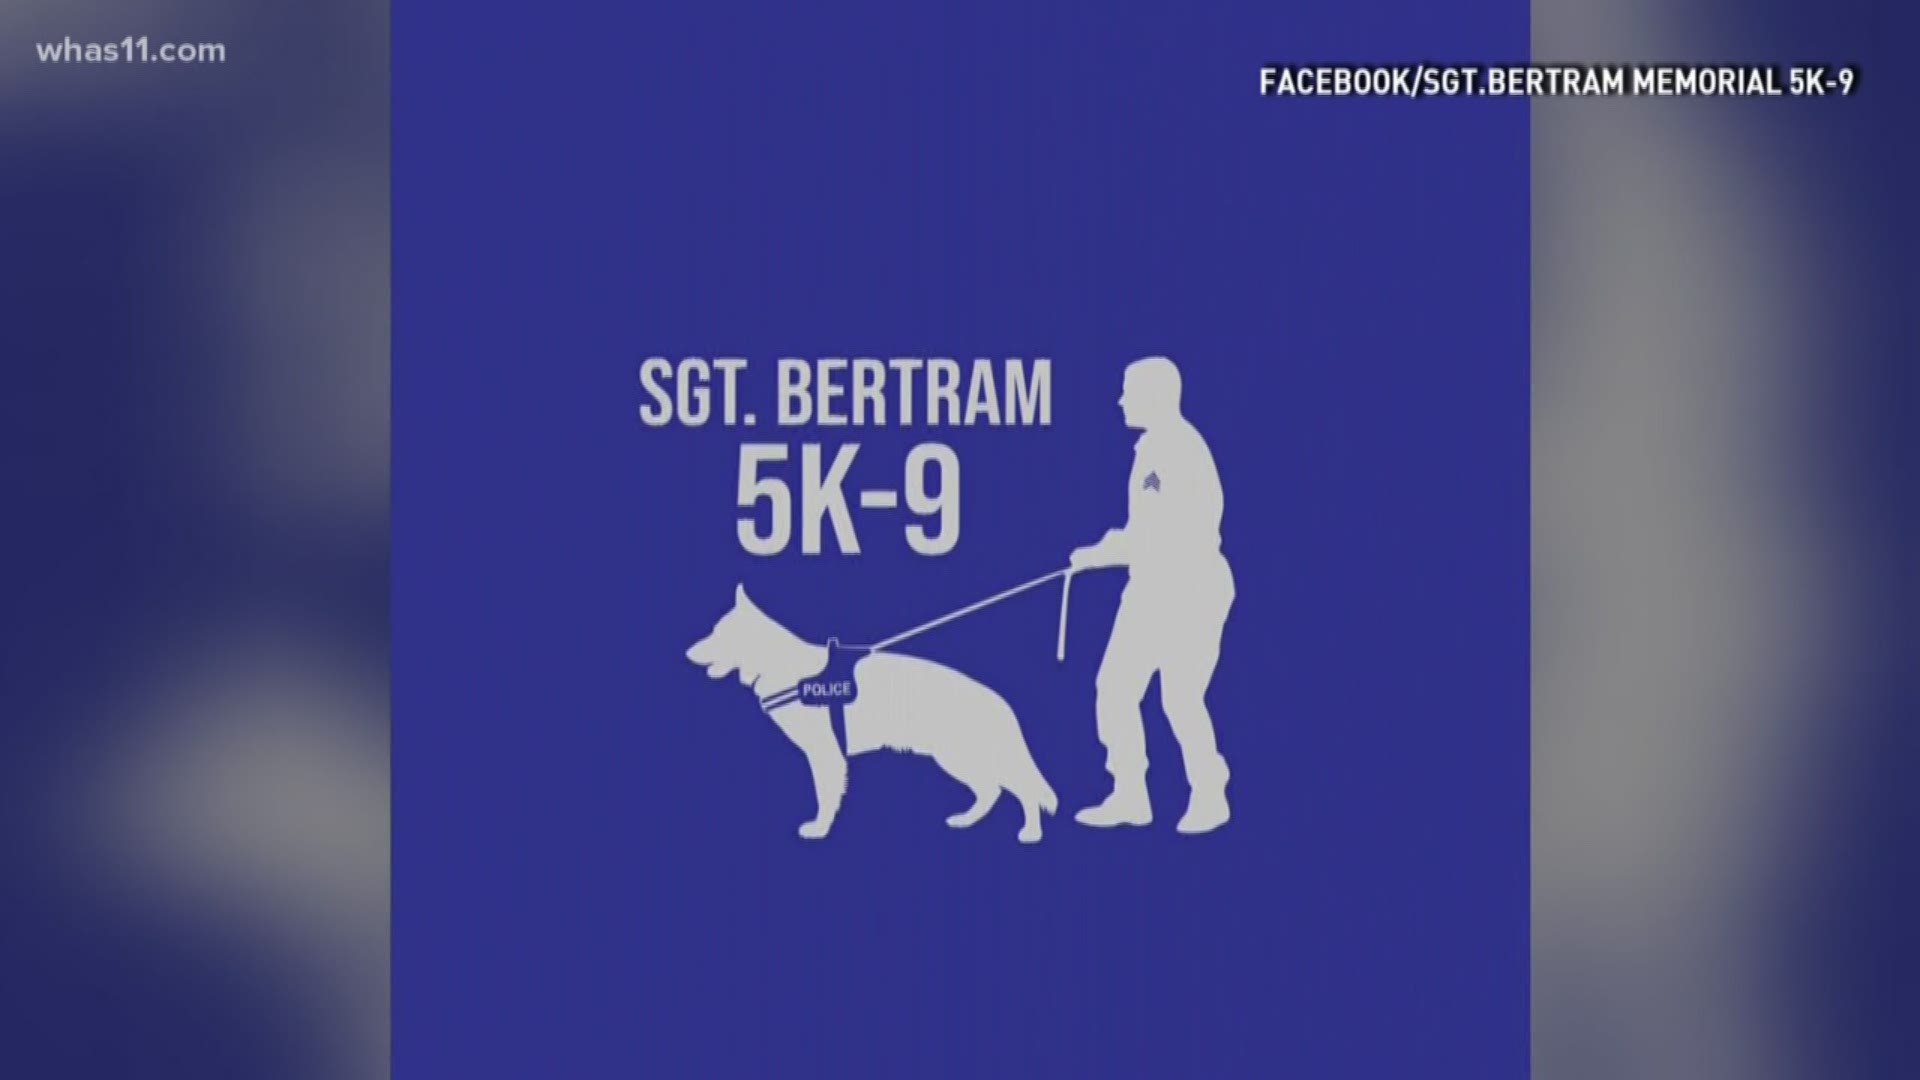 The Sergeant Bertram Memorial 5K-9 honors Sgt. Bertram and his love for dogs.